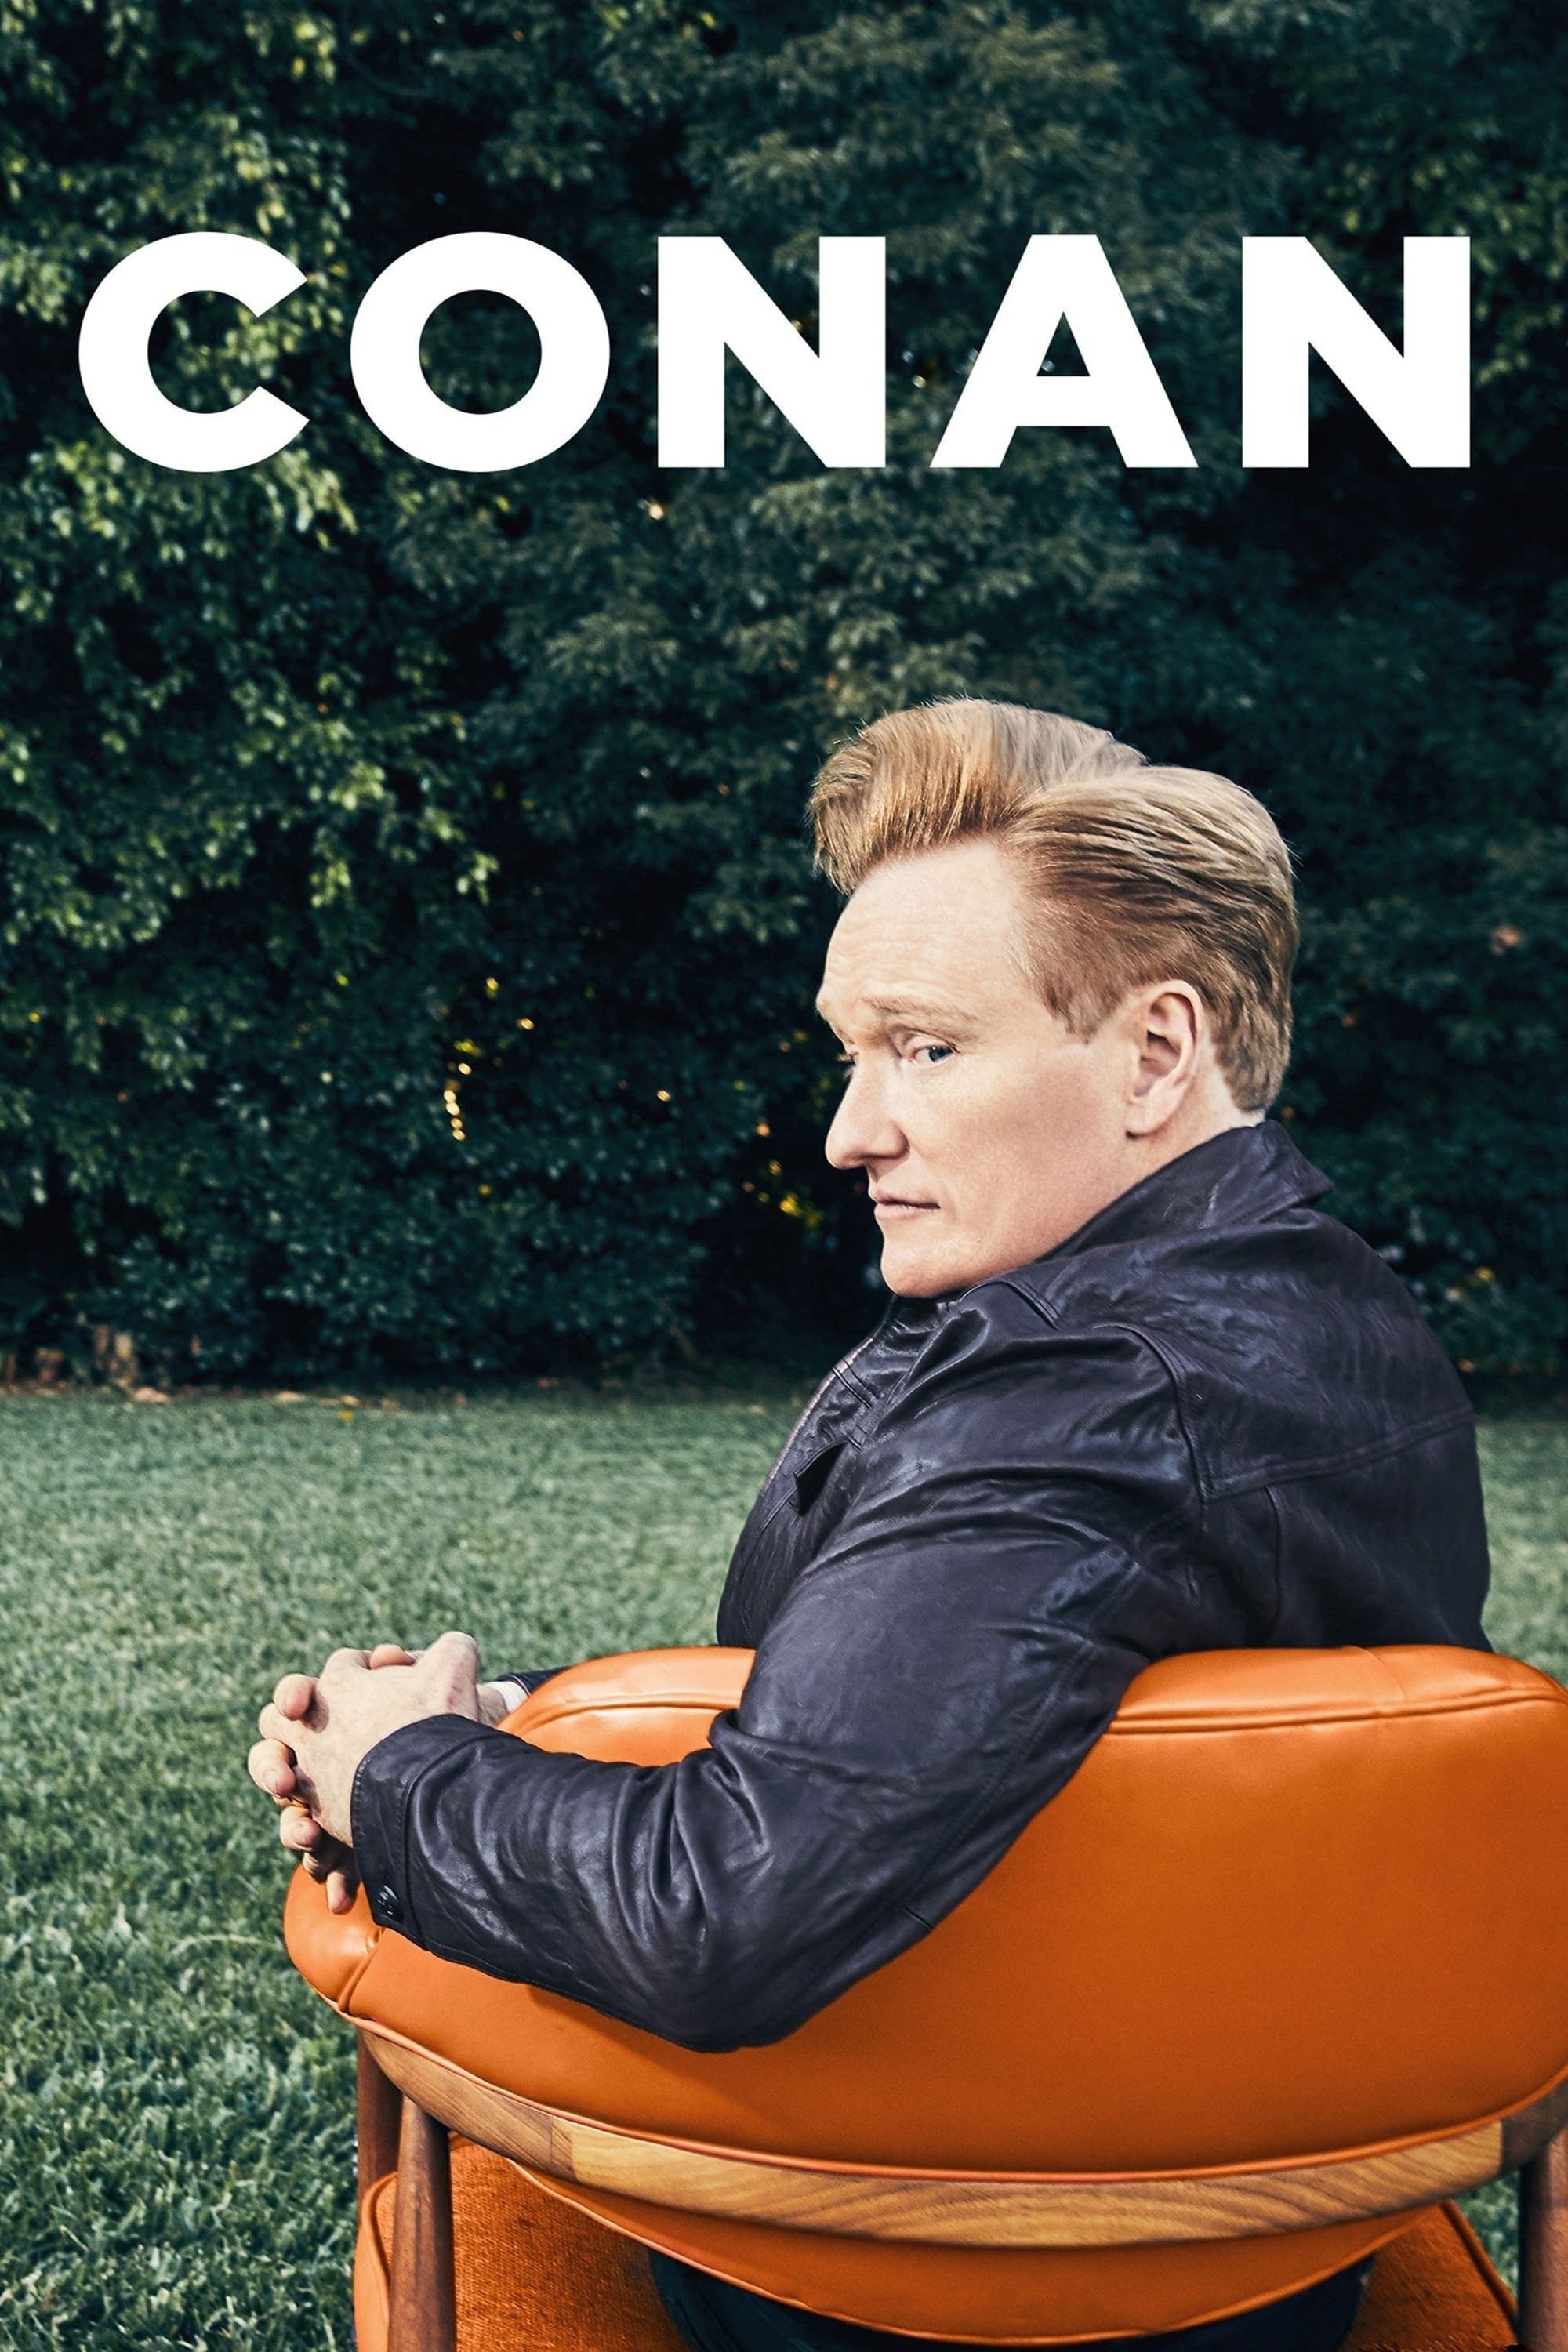 Conan Season 10